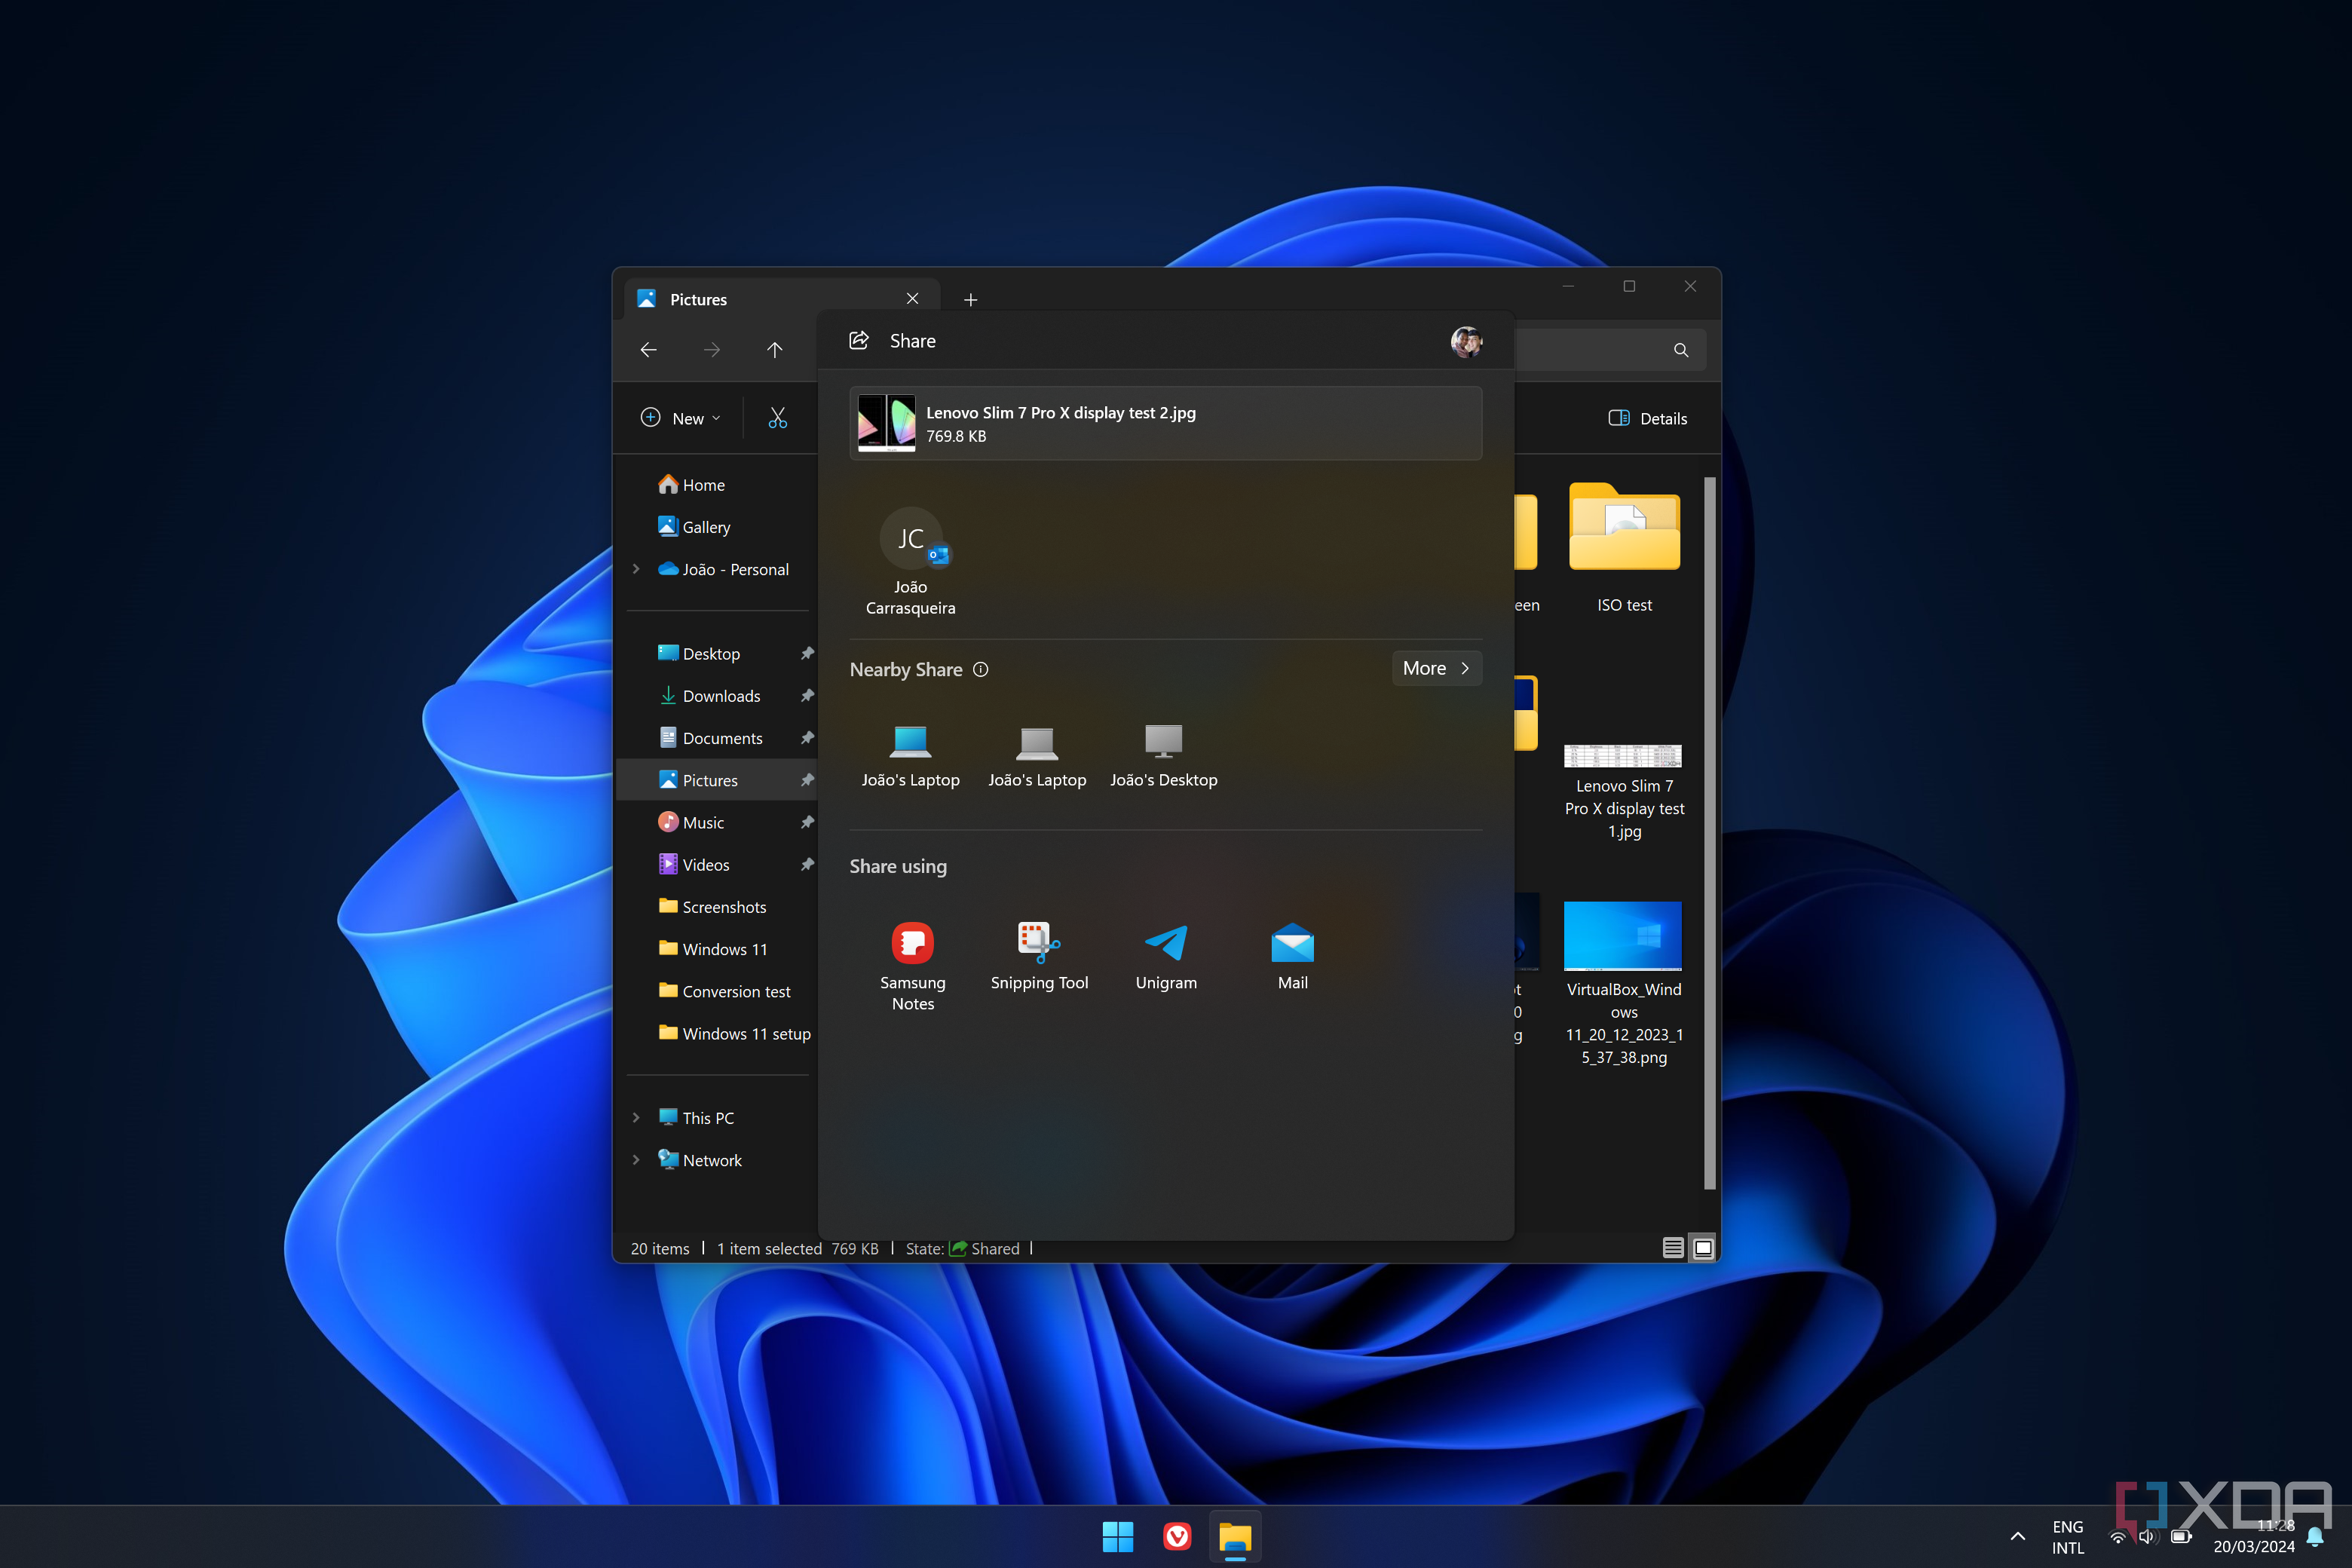 Снимок экрана: диалоговое окно общего доступа Windows 11 со списком ближайших компьютеров